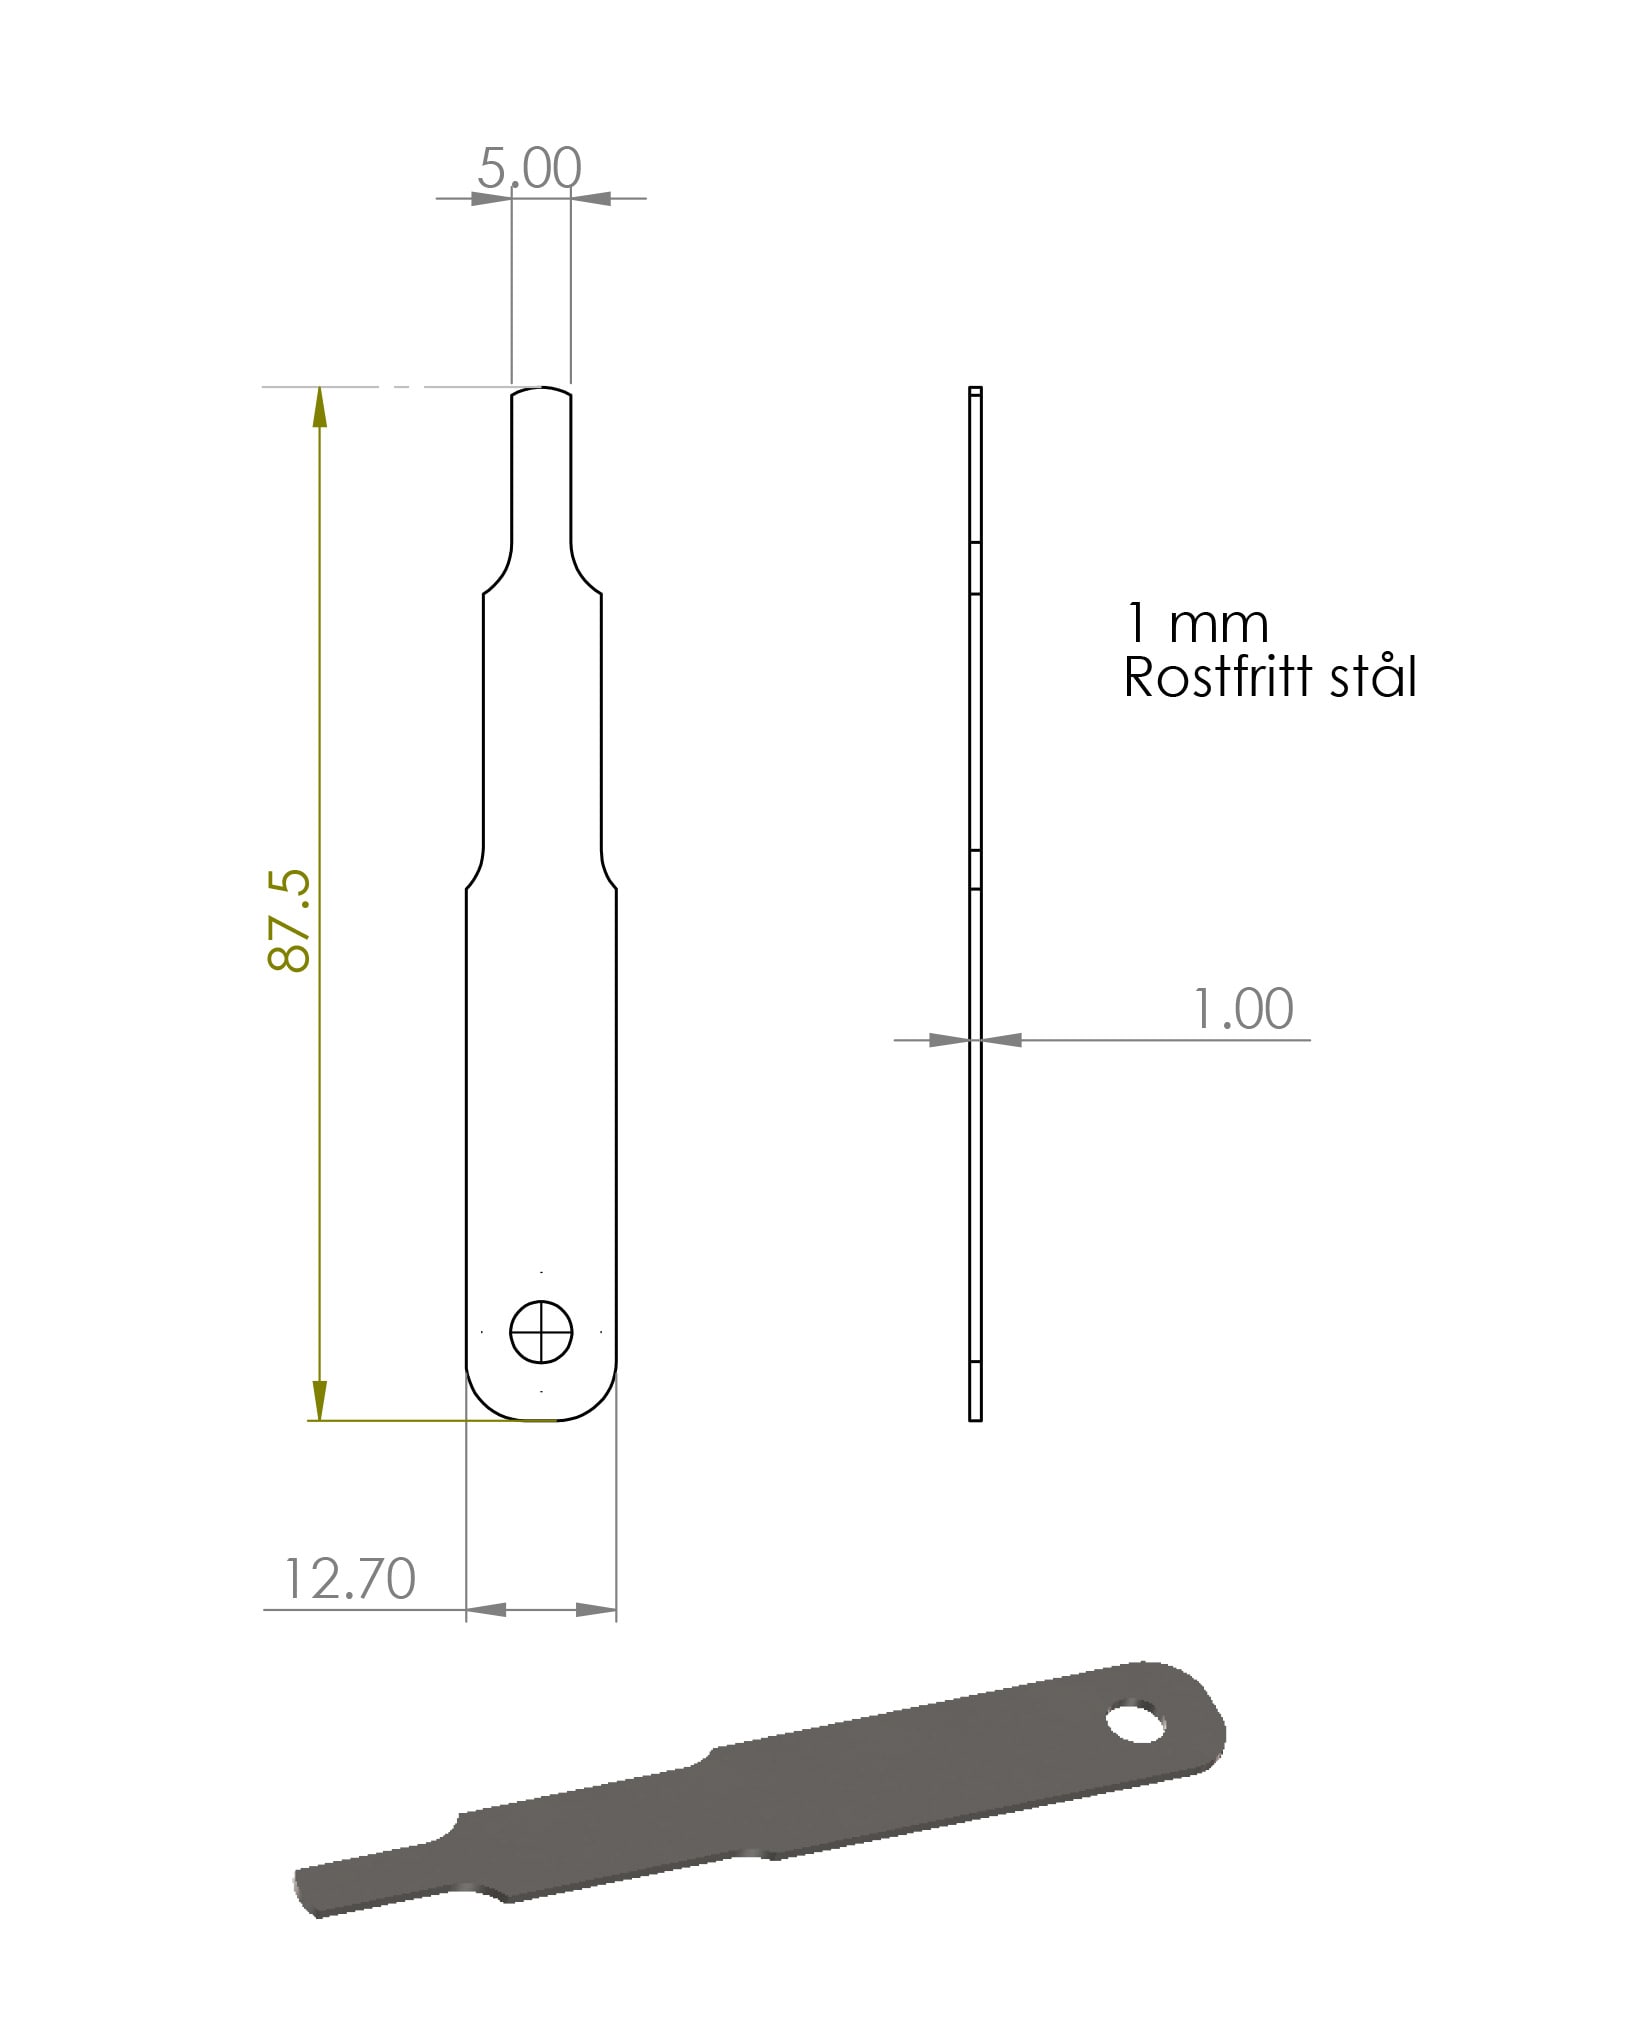 Bladmått 1 mm för Raket 95 CIK/FIA Standard